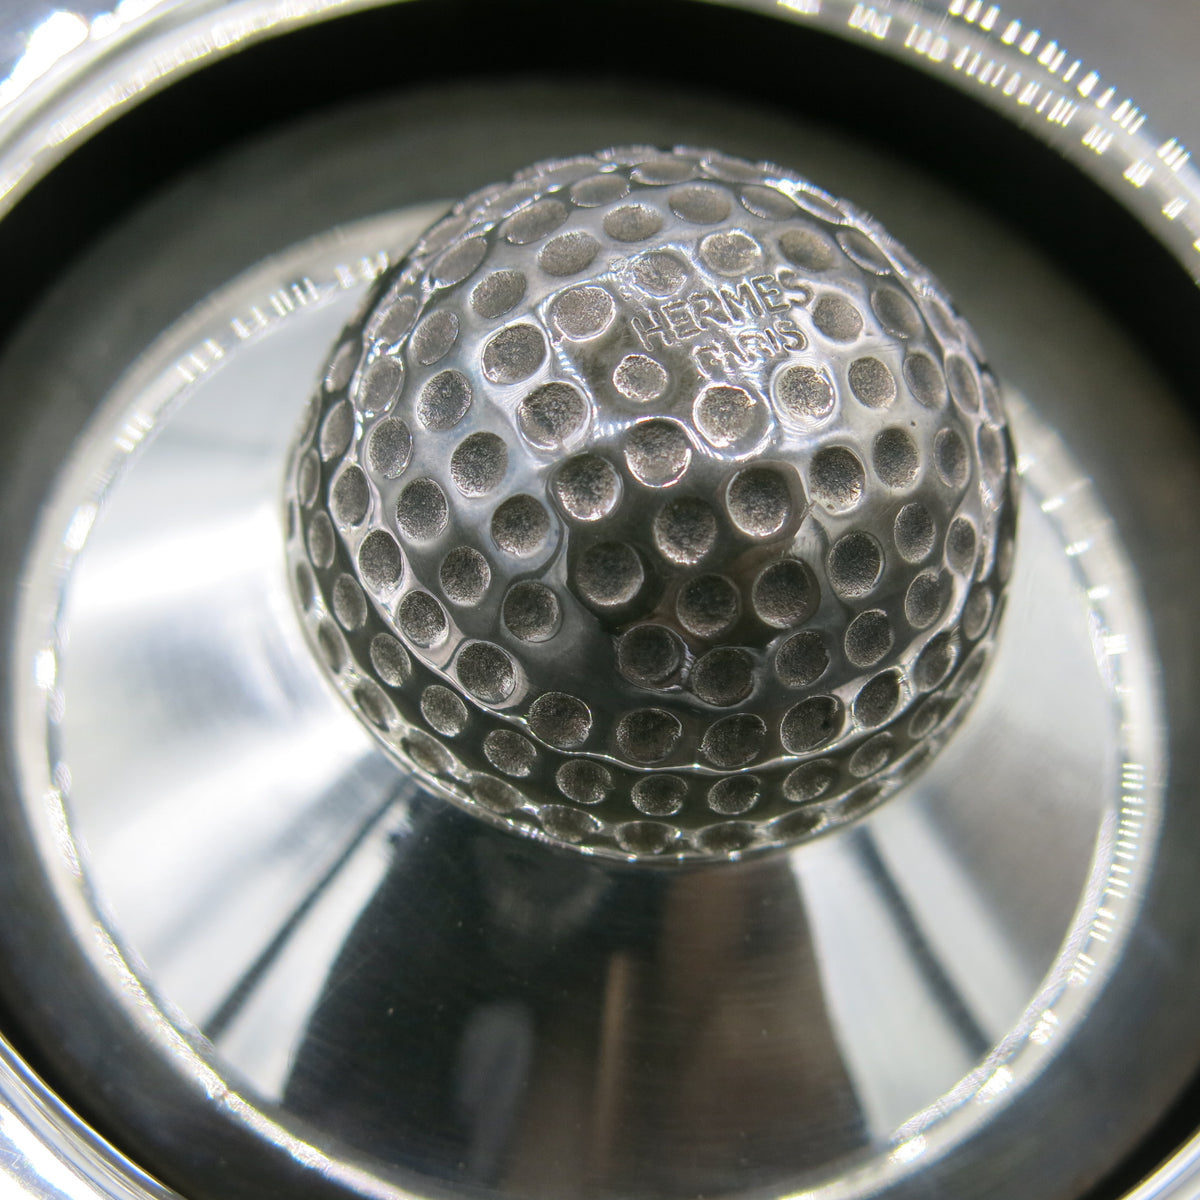 Hermès ashtray “Balle de Golf”